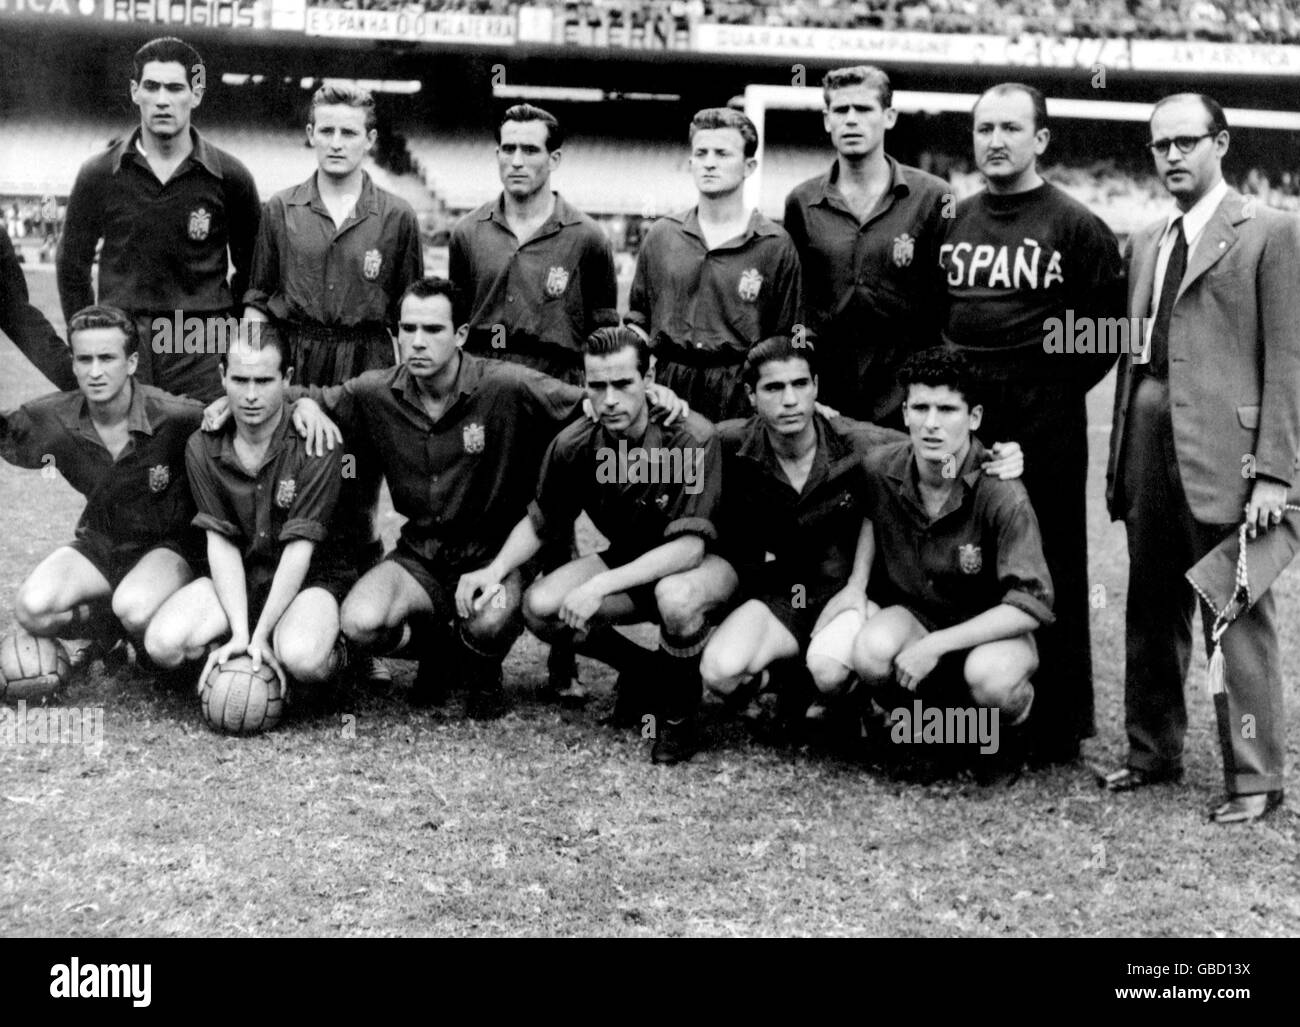 Copa del mundo de brasil 1950 fotografías e imágenes alta resolución - Alamy